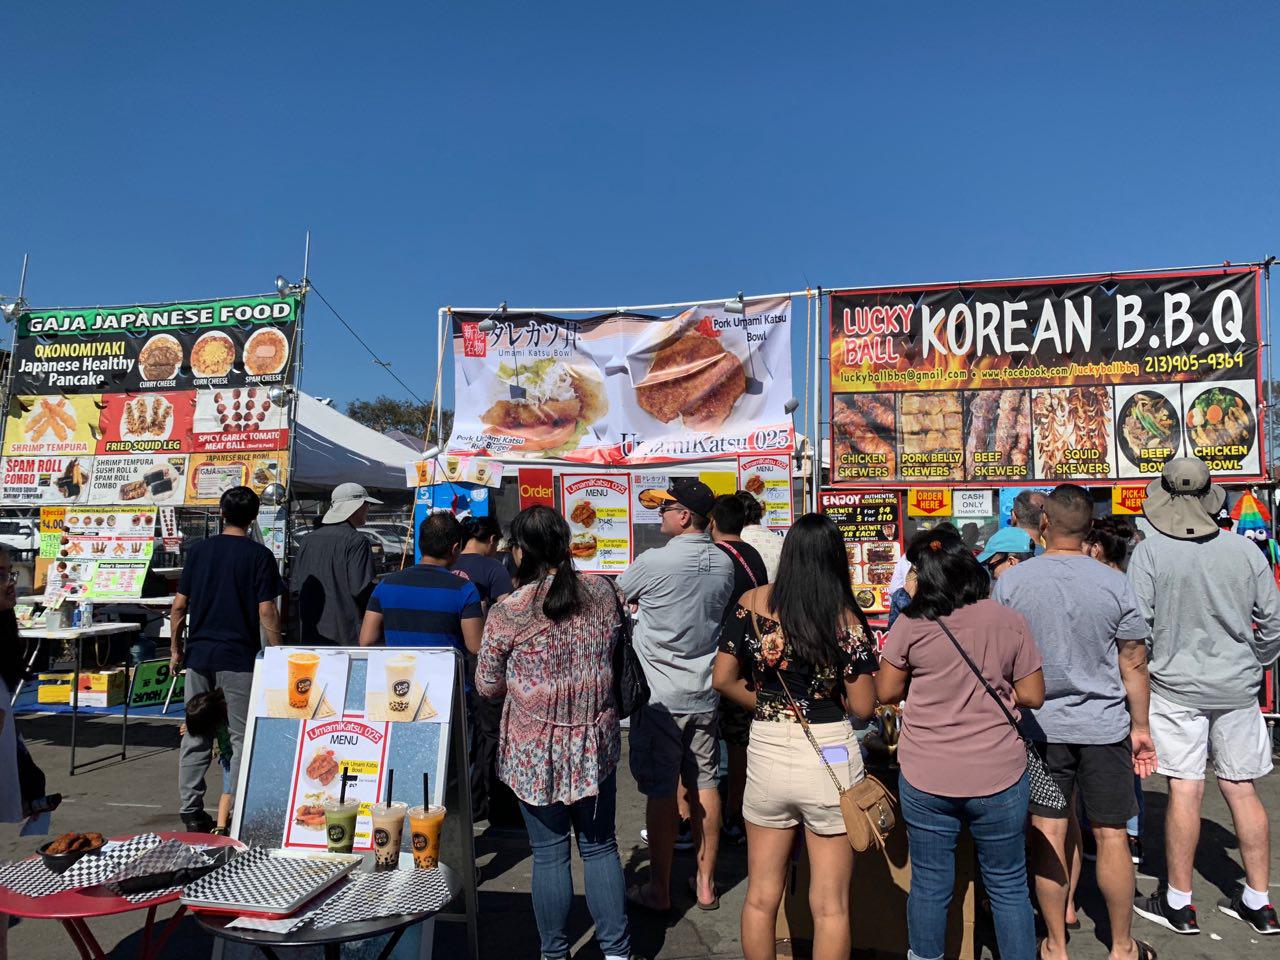 Japan Fair Costa Mesa 2019 Korean BBQ